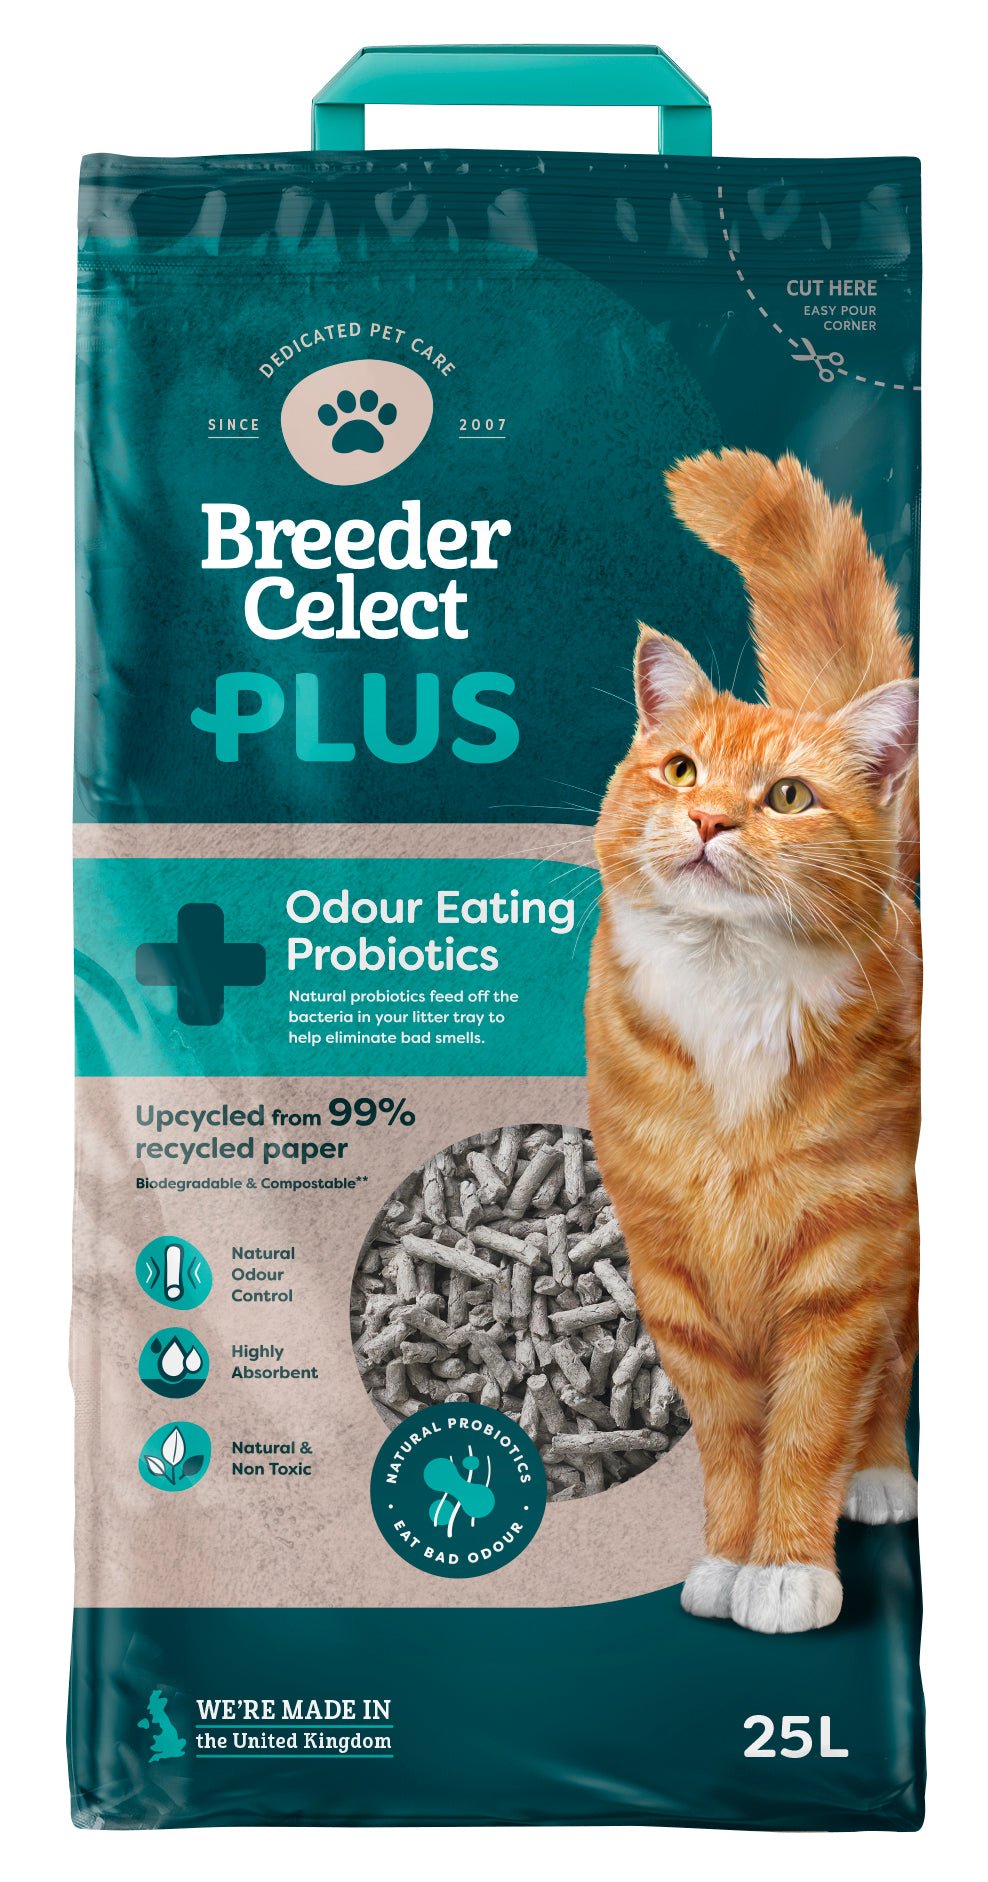 Breeder Celect Plus Probiotic Cat Litter 25 L, FibreCycle,